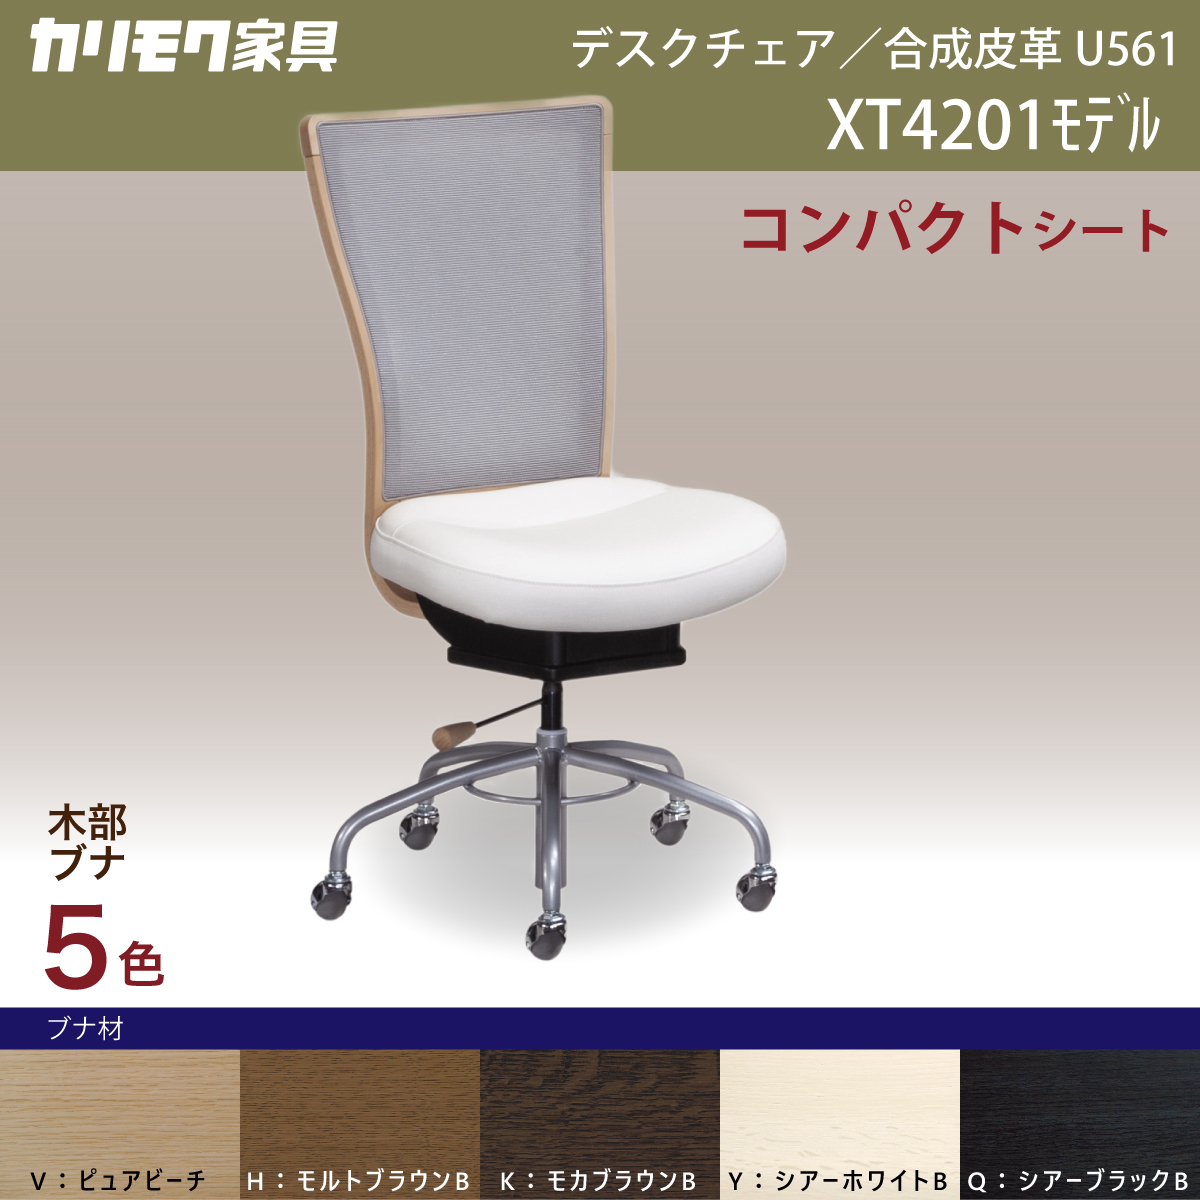 カリモク デスクチェア XT4201 オフィスチェア 白 椅子 1人 疲れない 姿勢 高さ調整 合成皮革 木部5色 ロッキング ガス昇降 SOHO  国産 カリモク家具